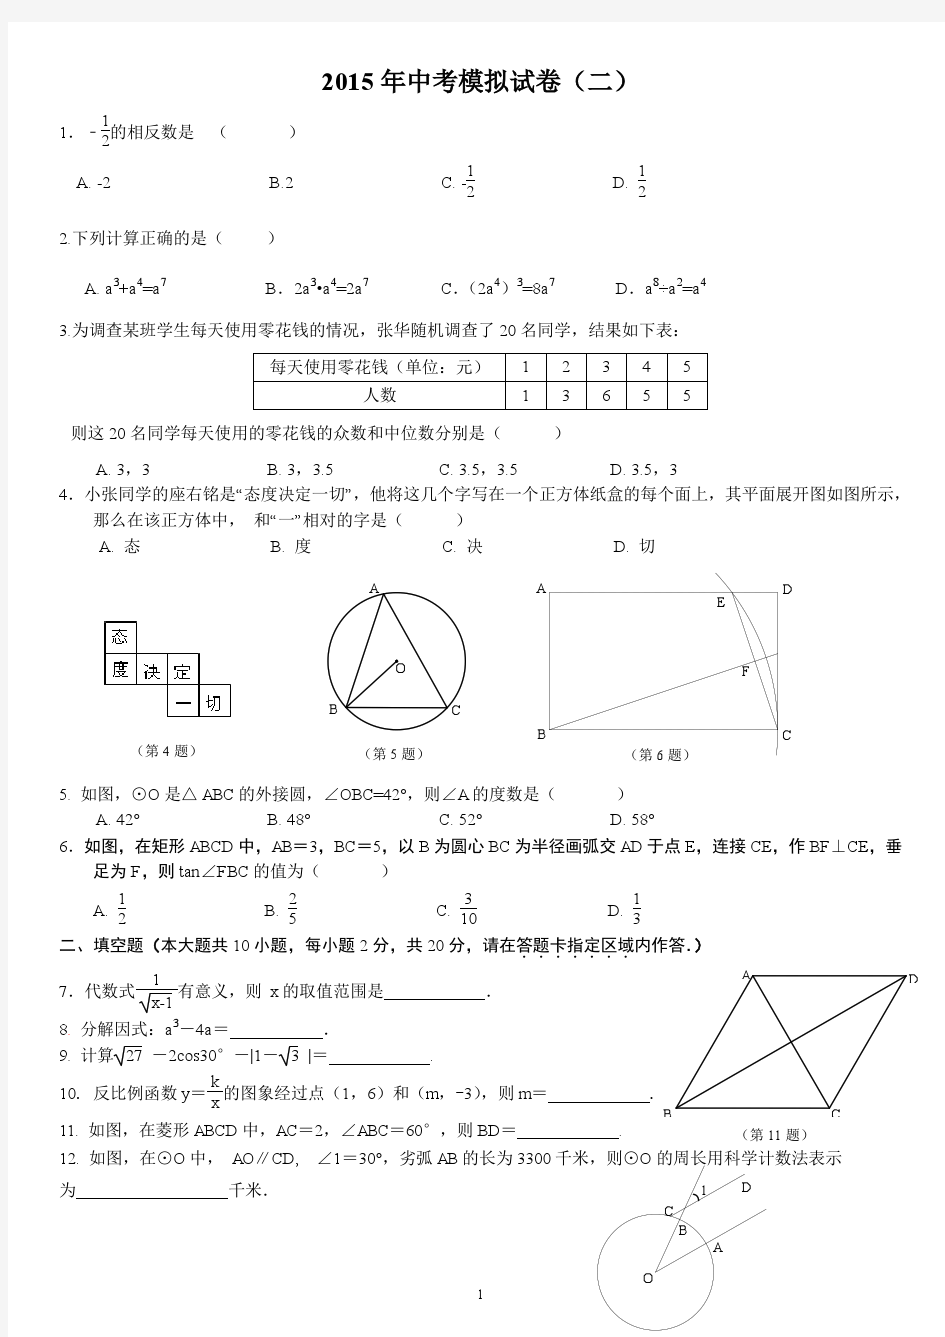 南京市联合体2015年中考二模数学试题及答案解析